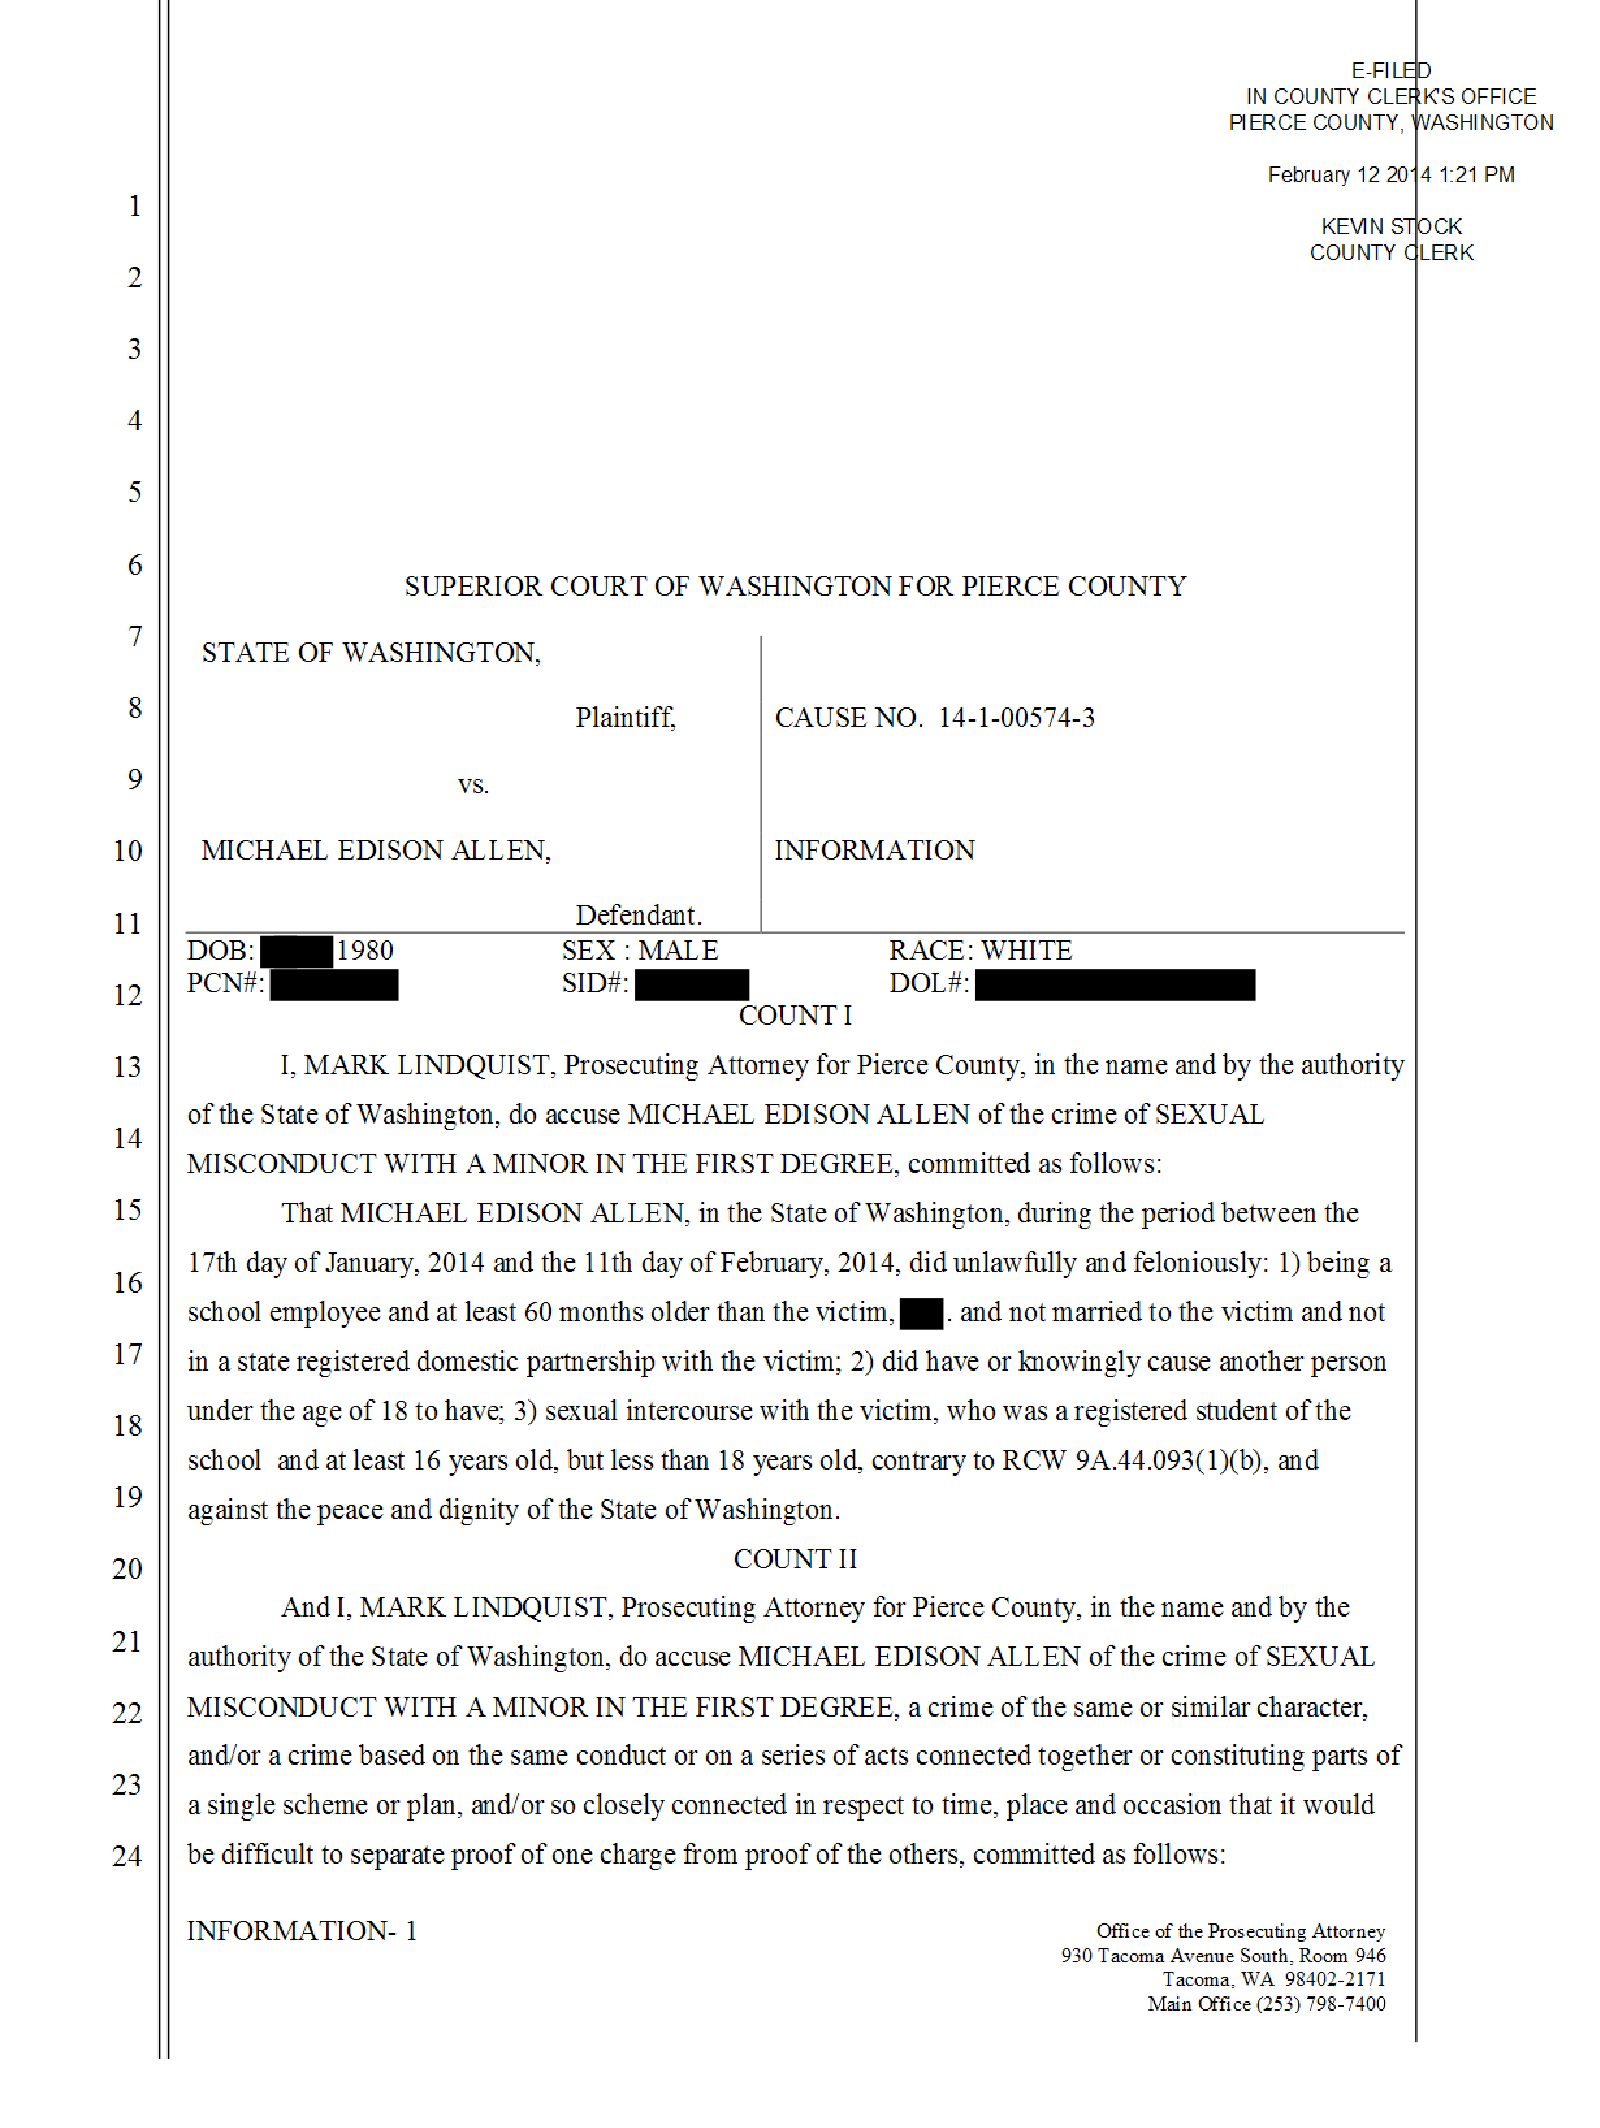 Copy of Allen Michael probable cause affidavit2.png